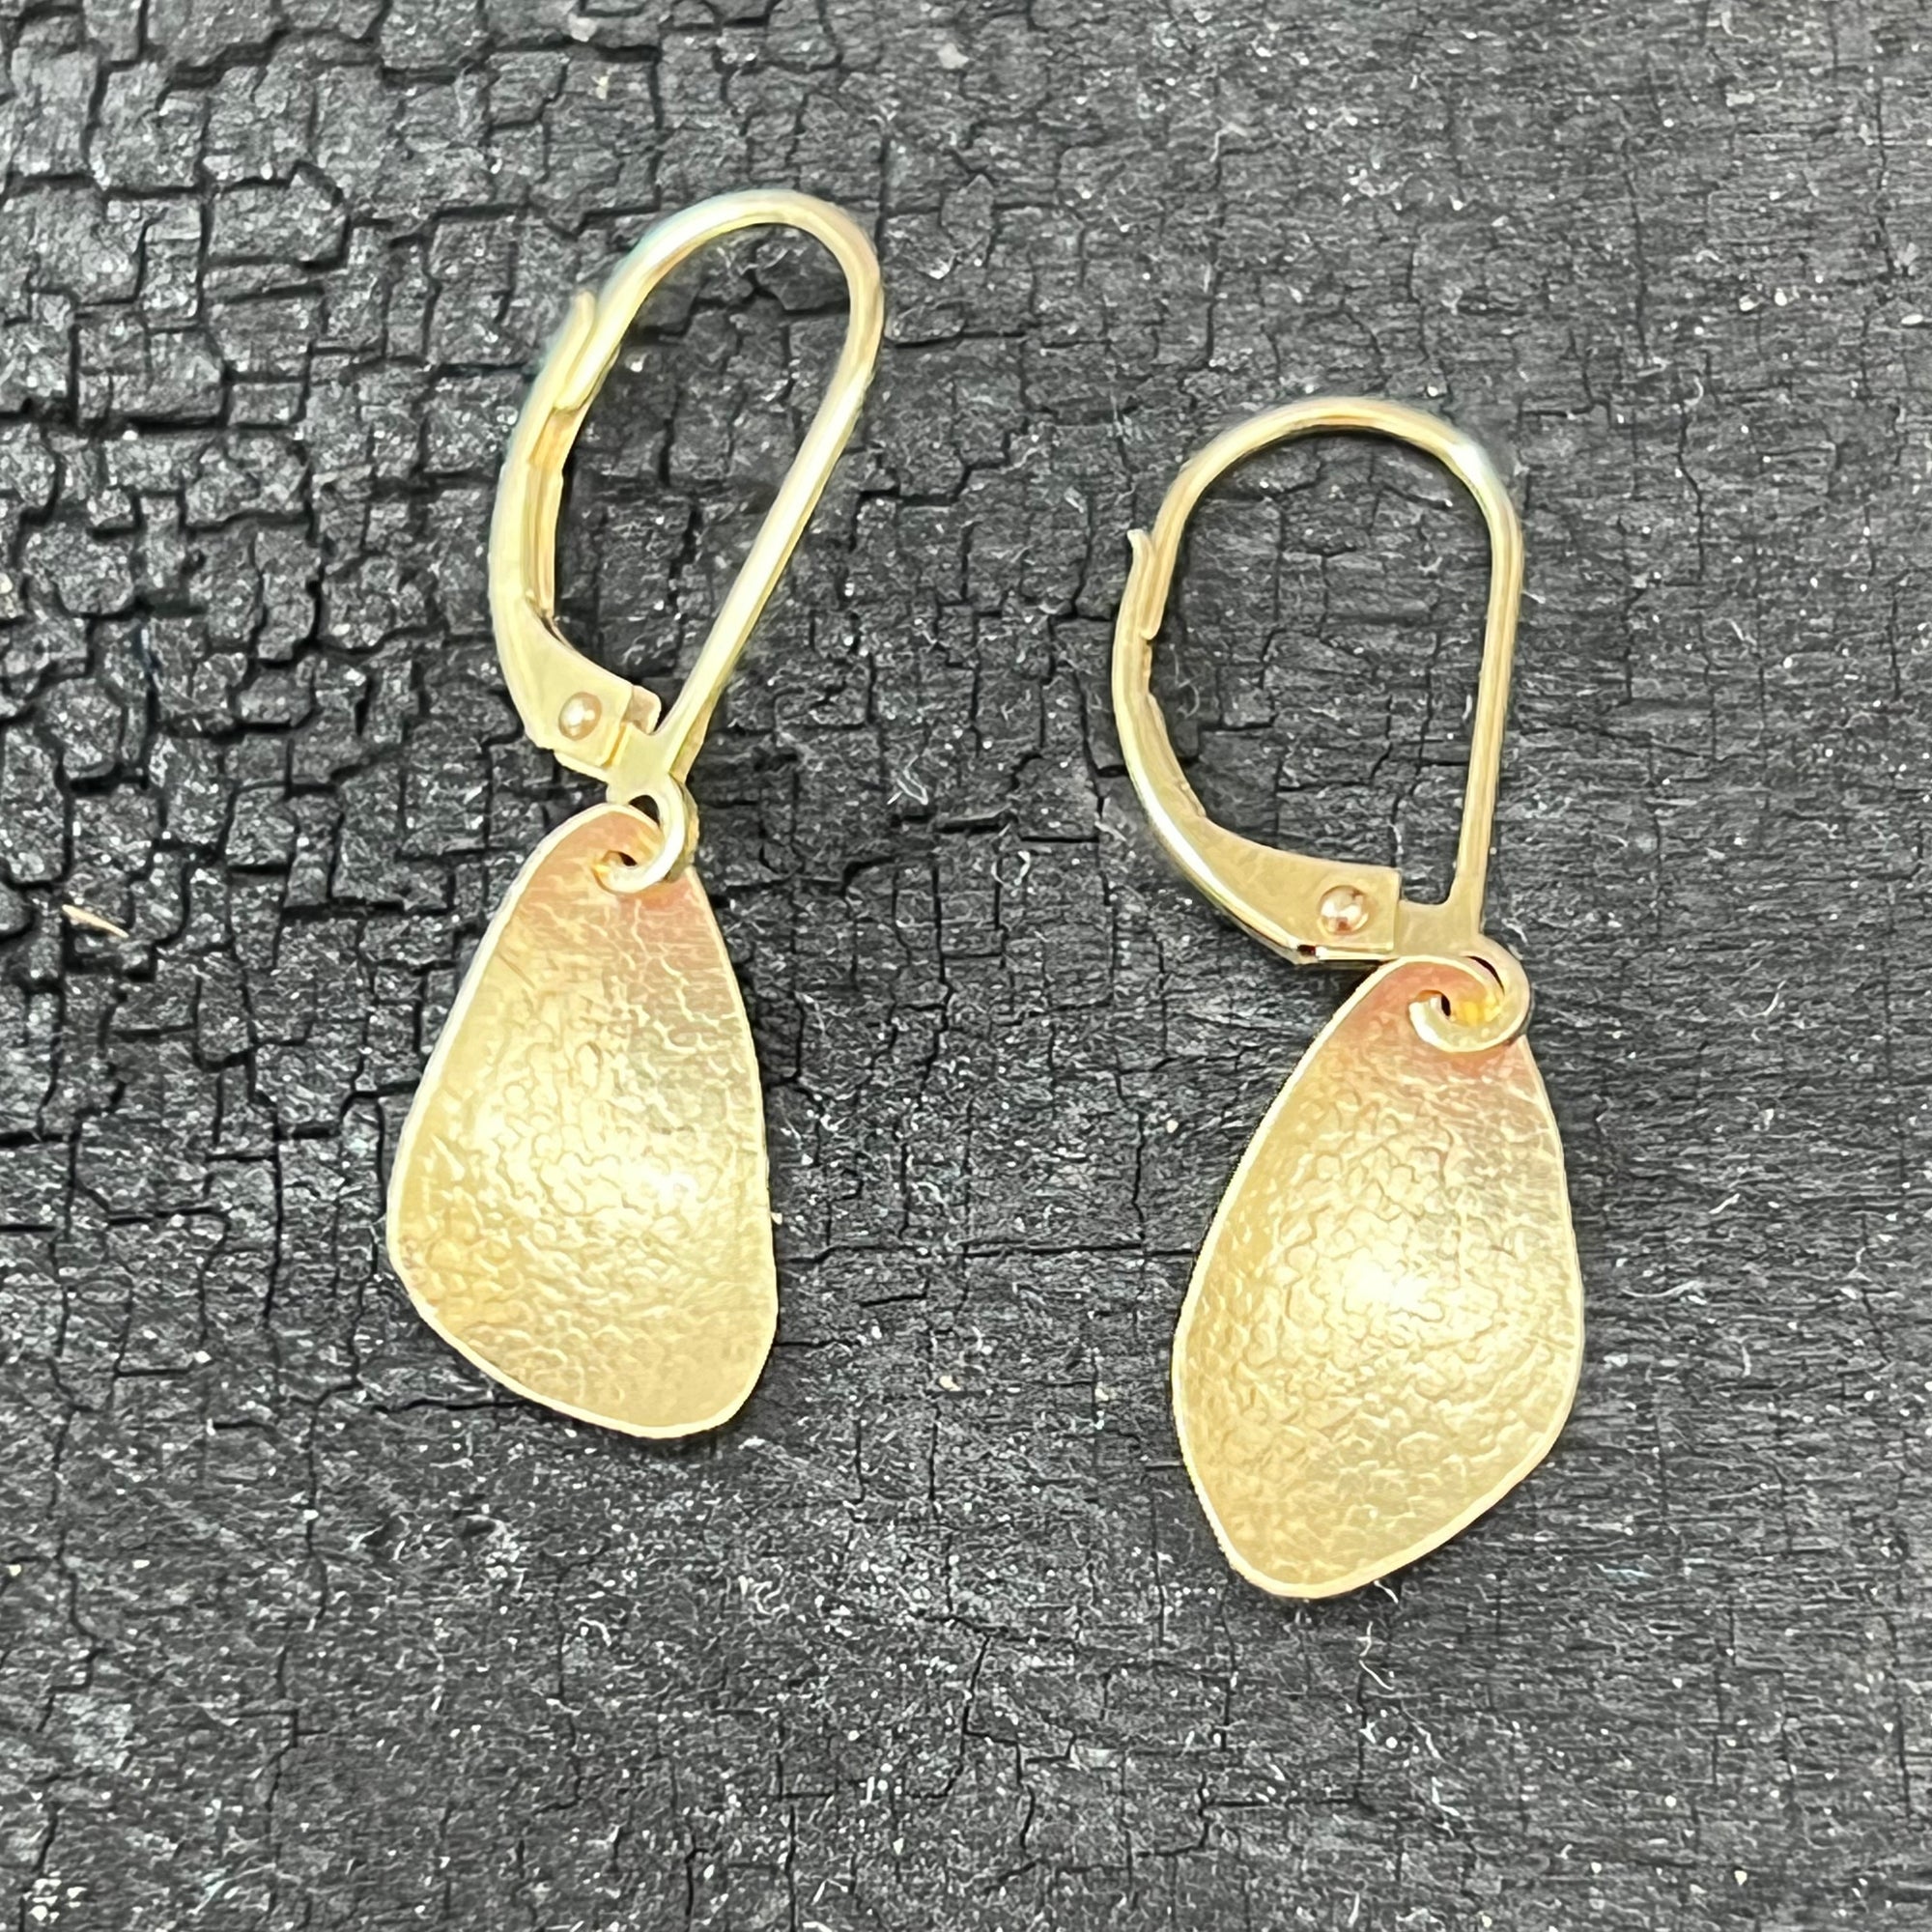 Tiny 14K gold wings earrings by Garden of Silver in Westhampton Beach. www.gardenofsilver.com